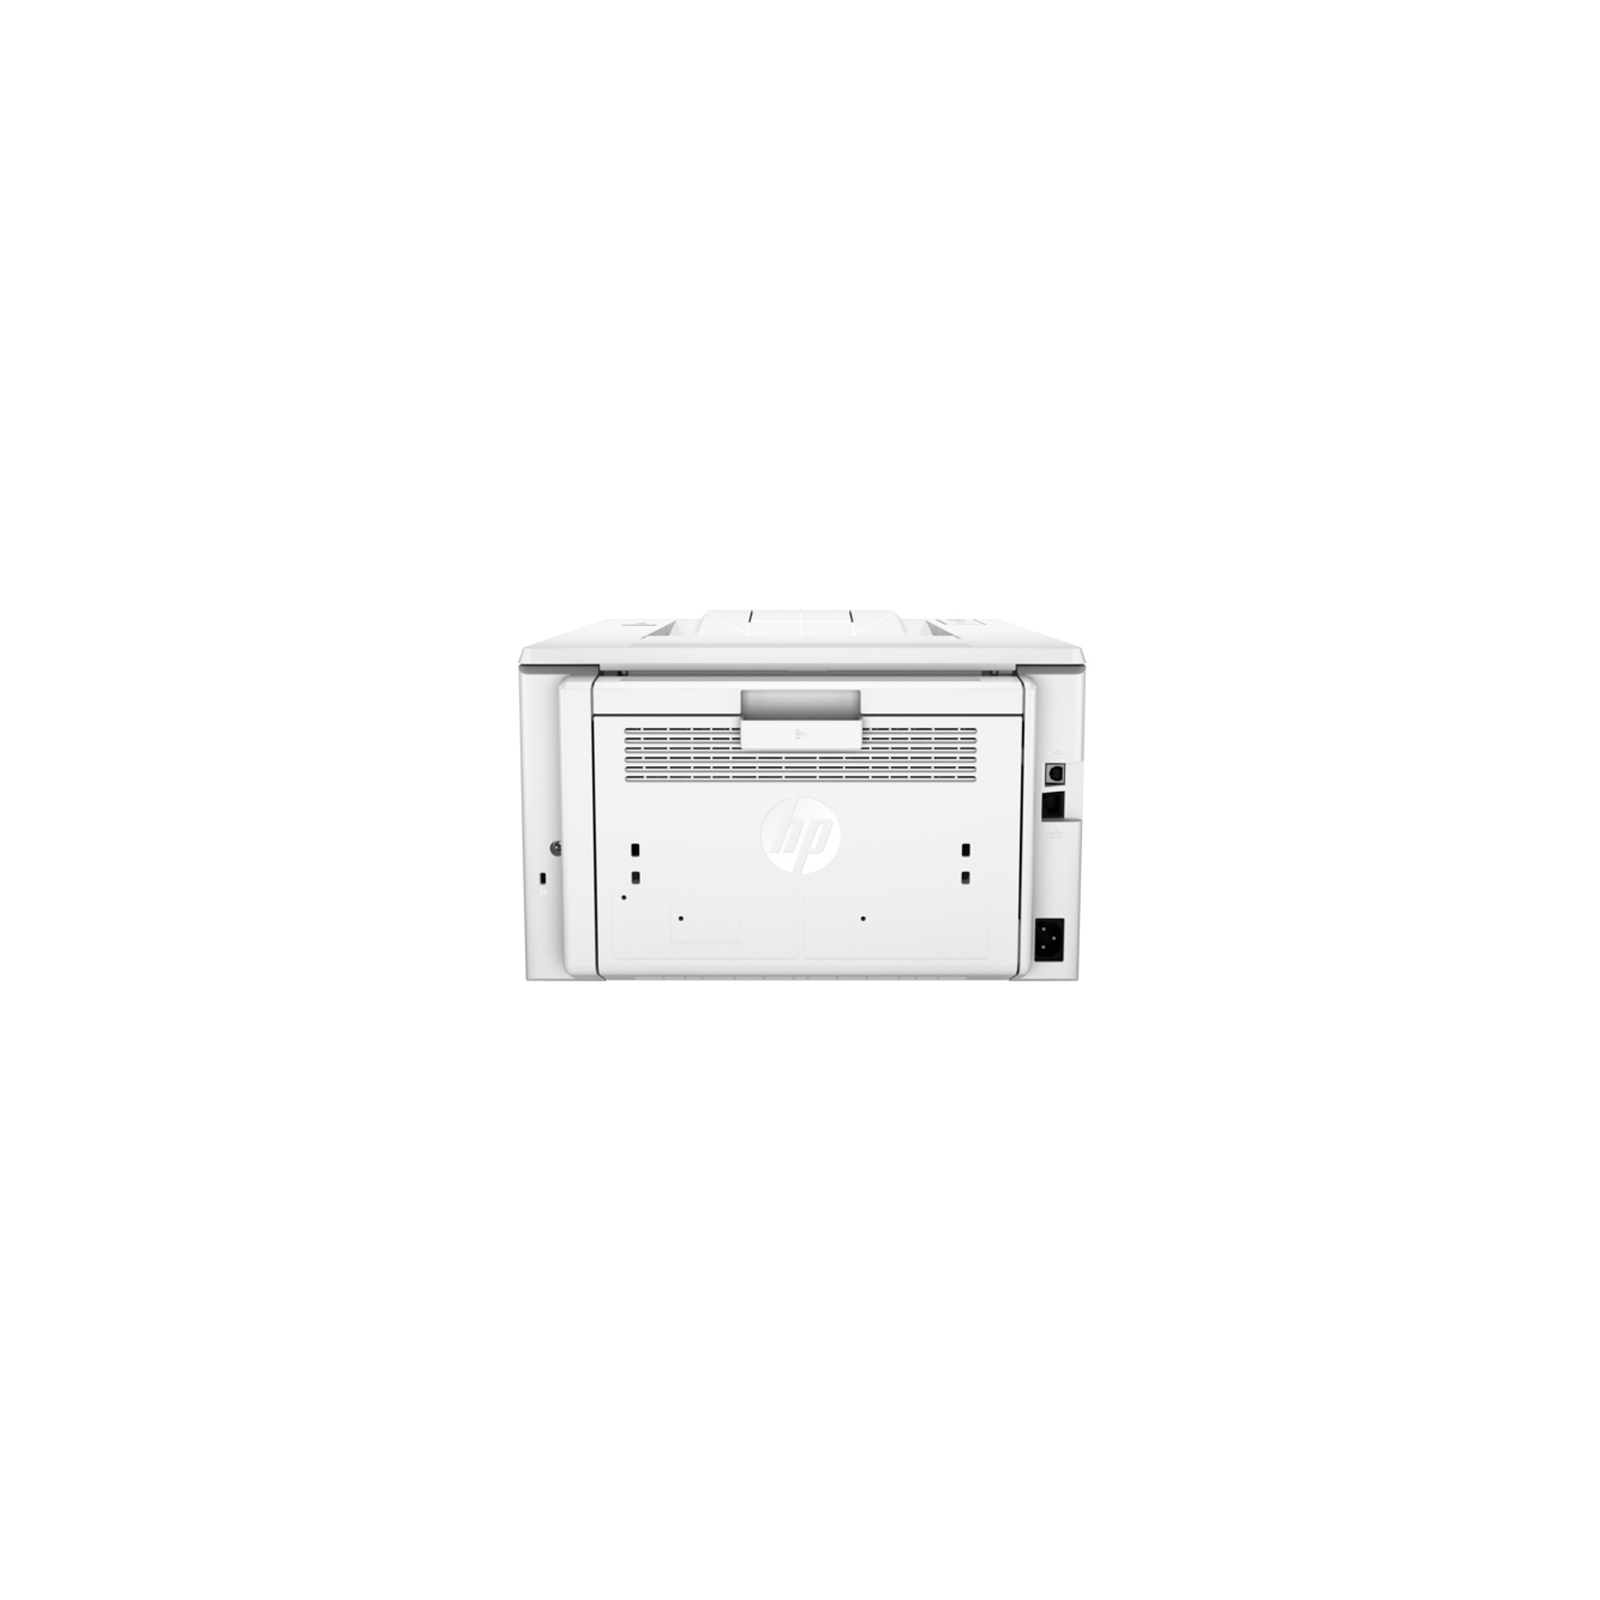 Лазерный принтер HP LaserJet Pro M203dw з Wi-Fi (G3Q47A) изображение 4